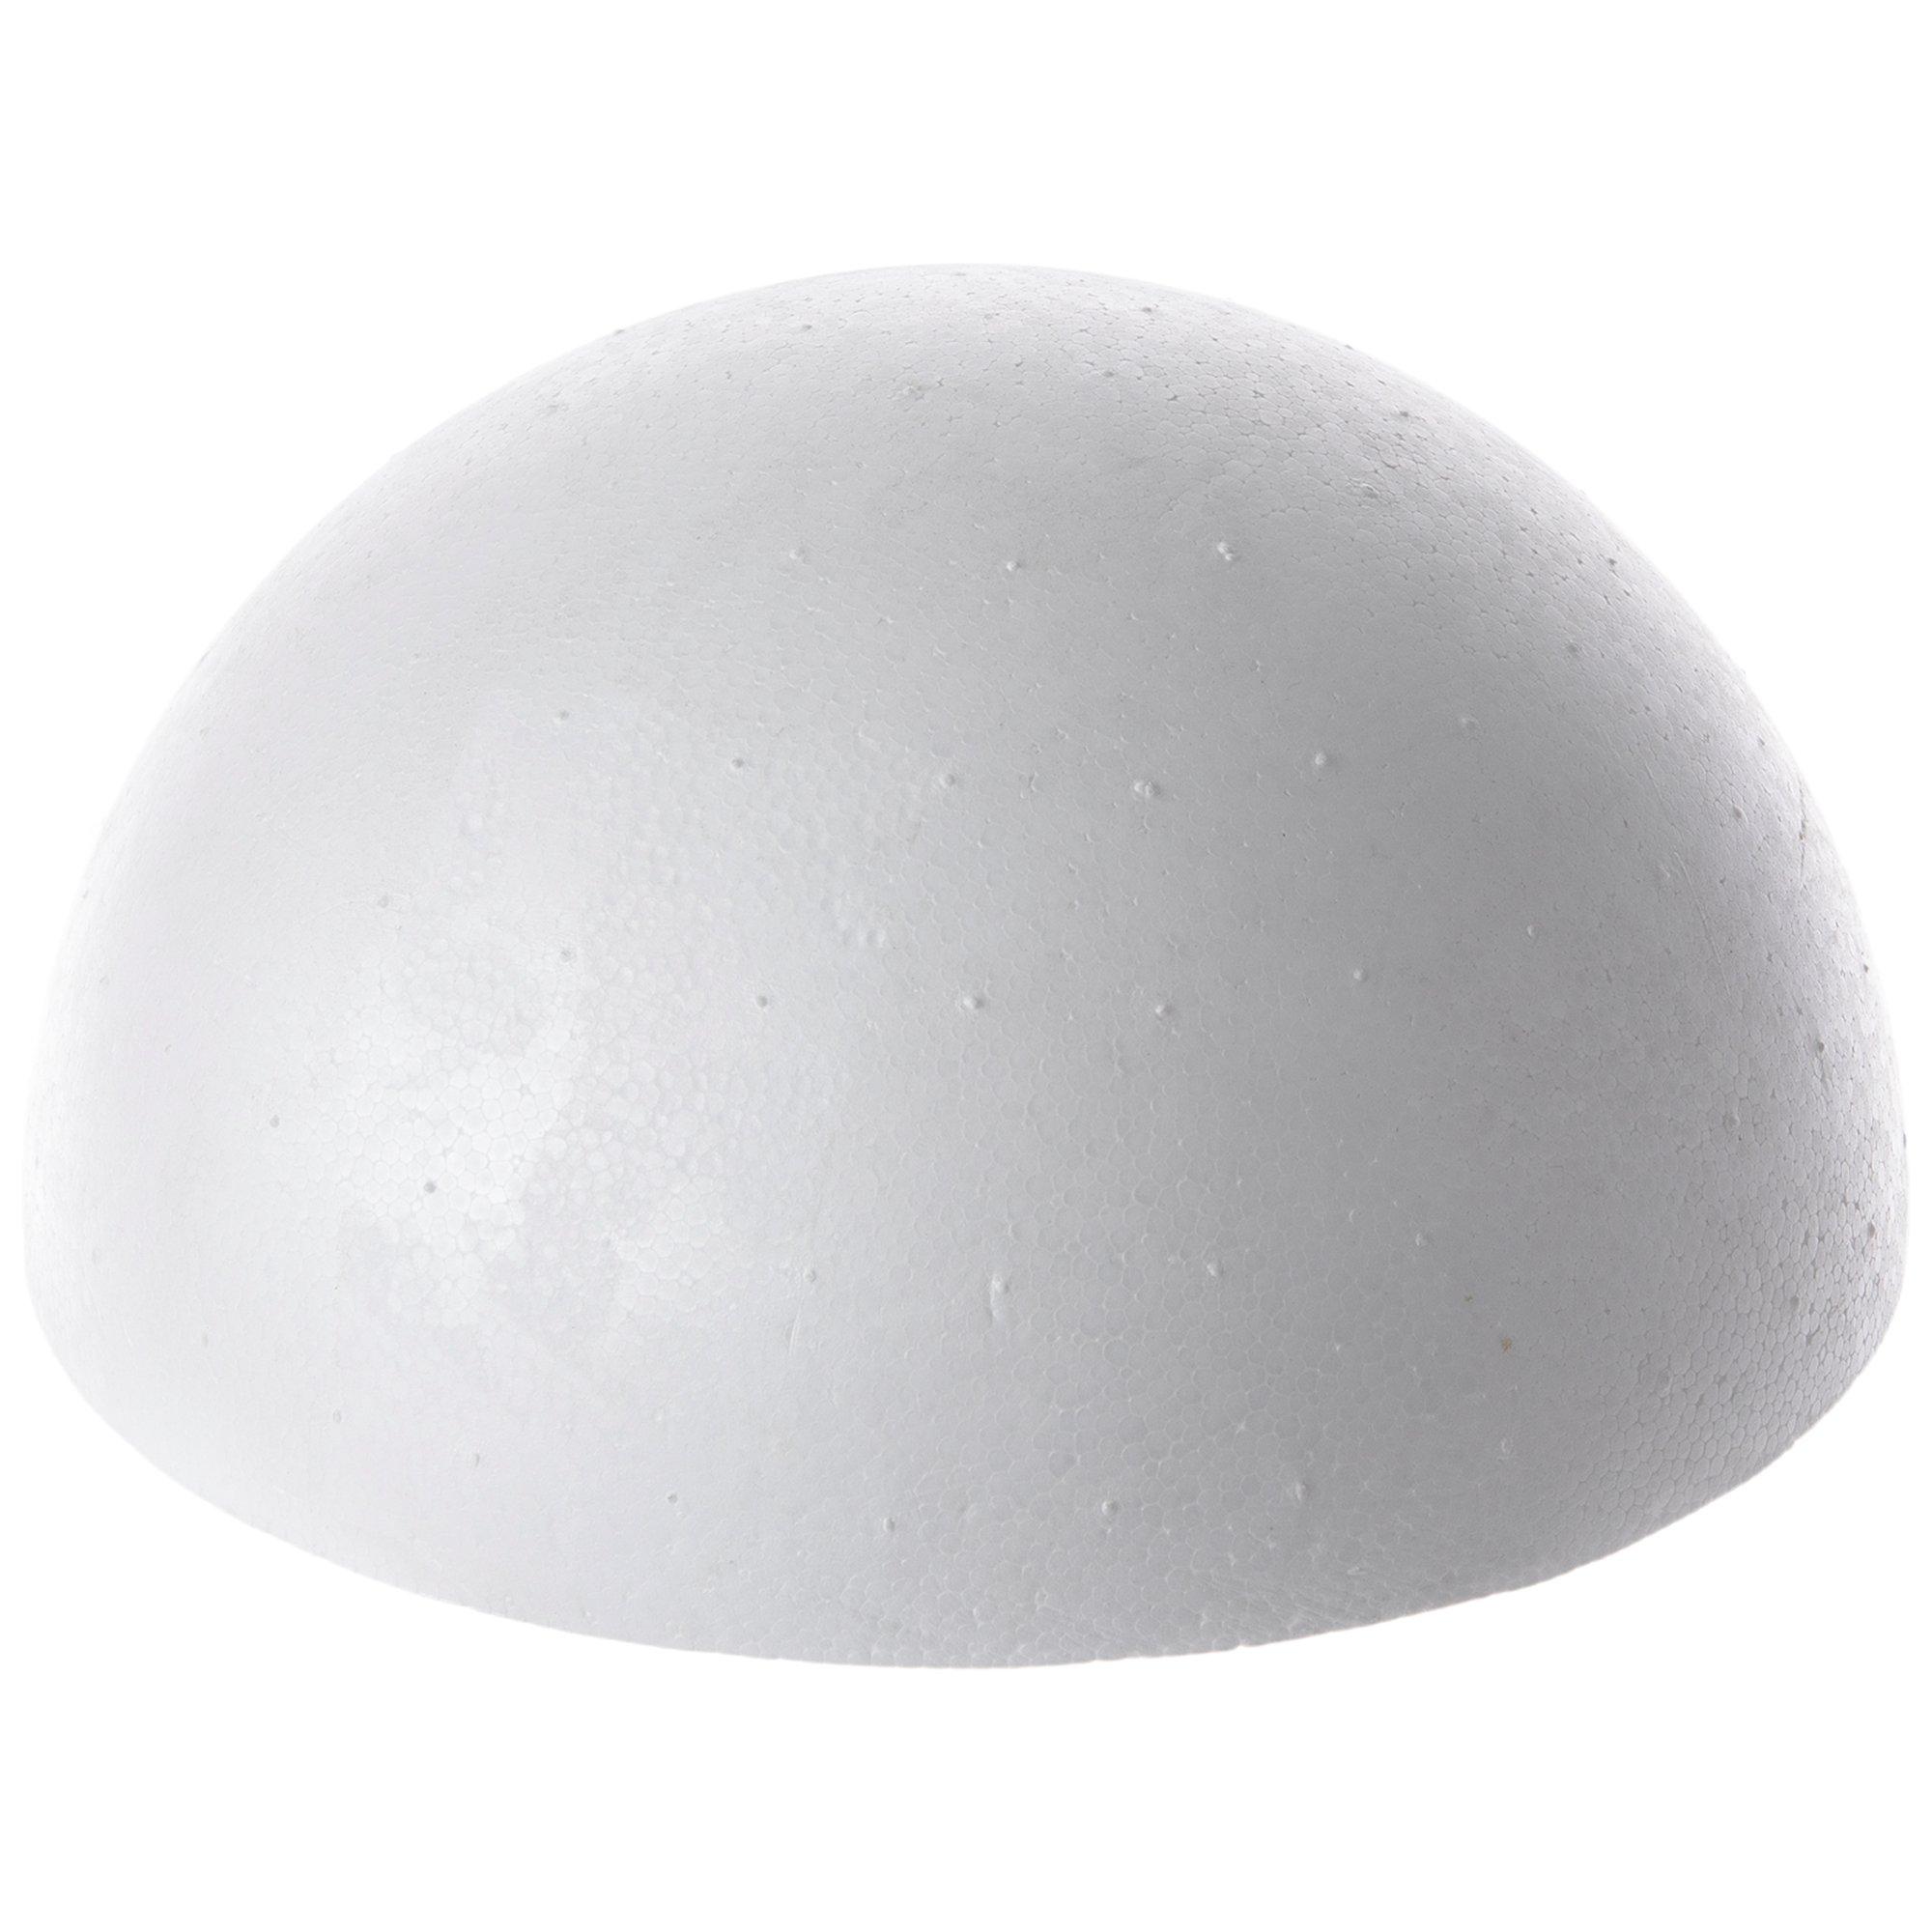 12 Inch Foam Polystyrene Ball Full Ball and Half Ball for Art